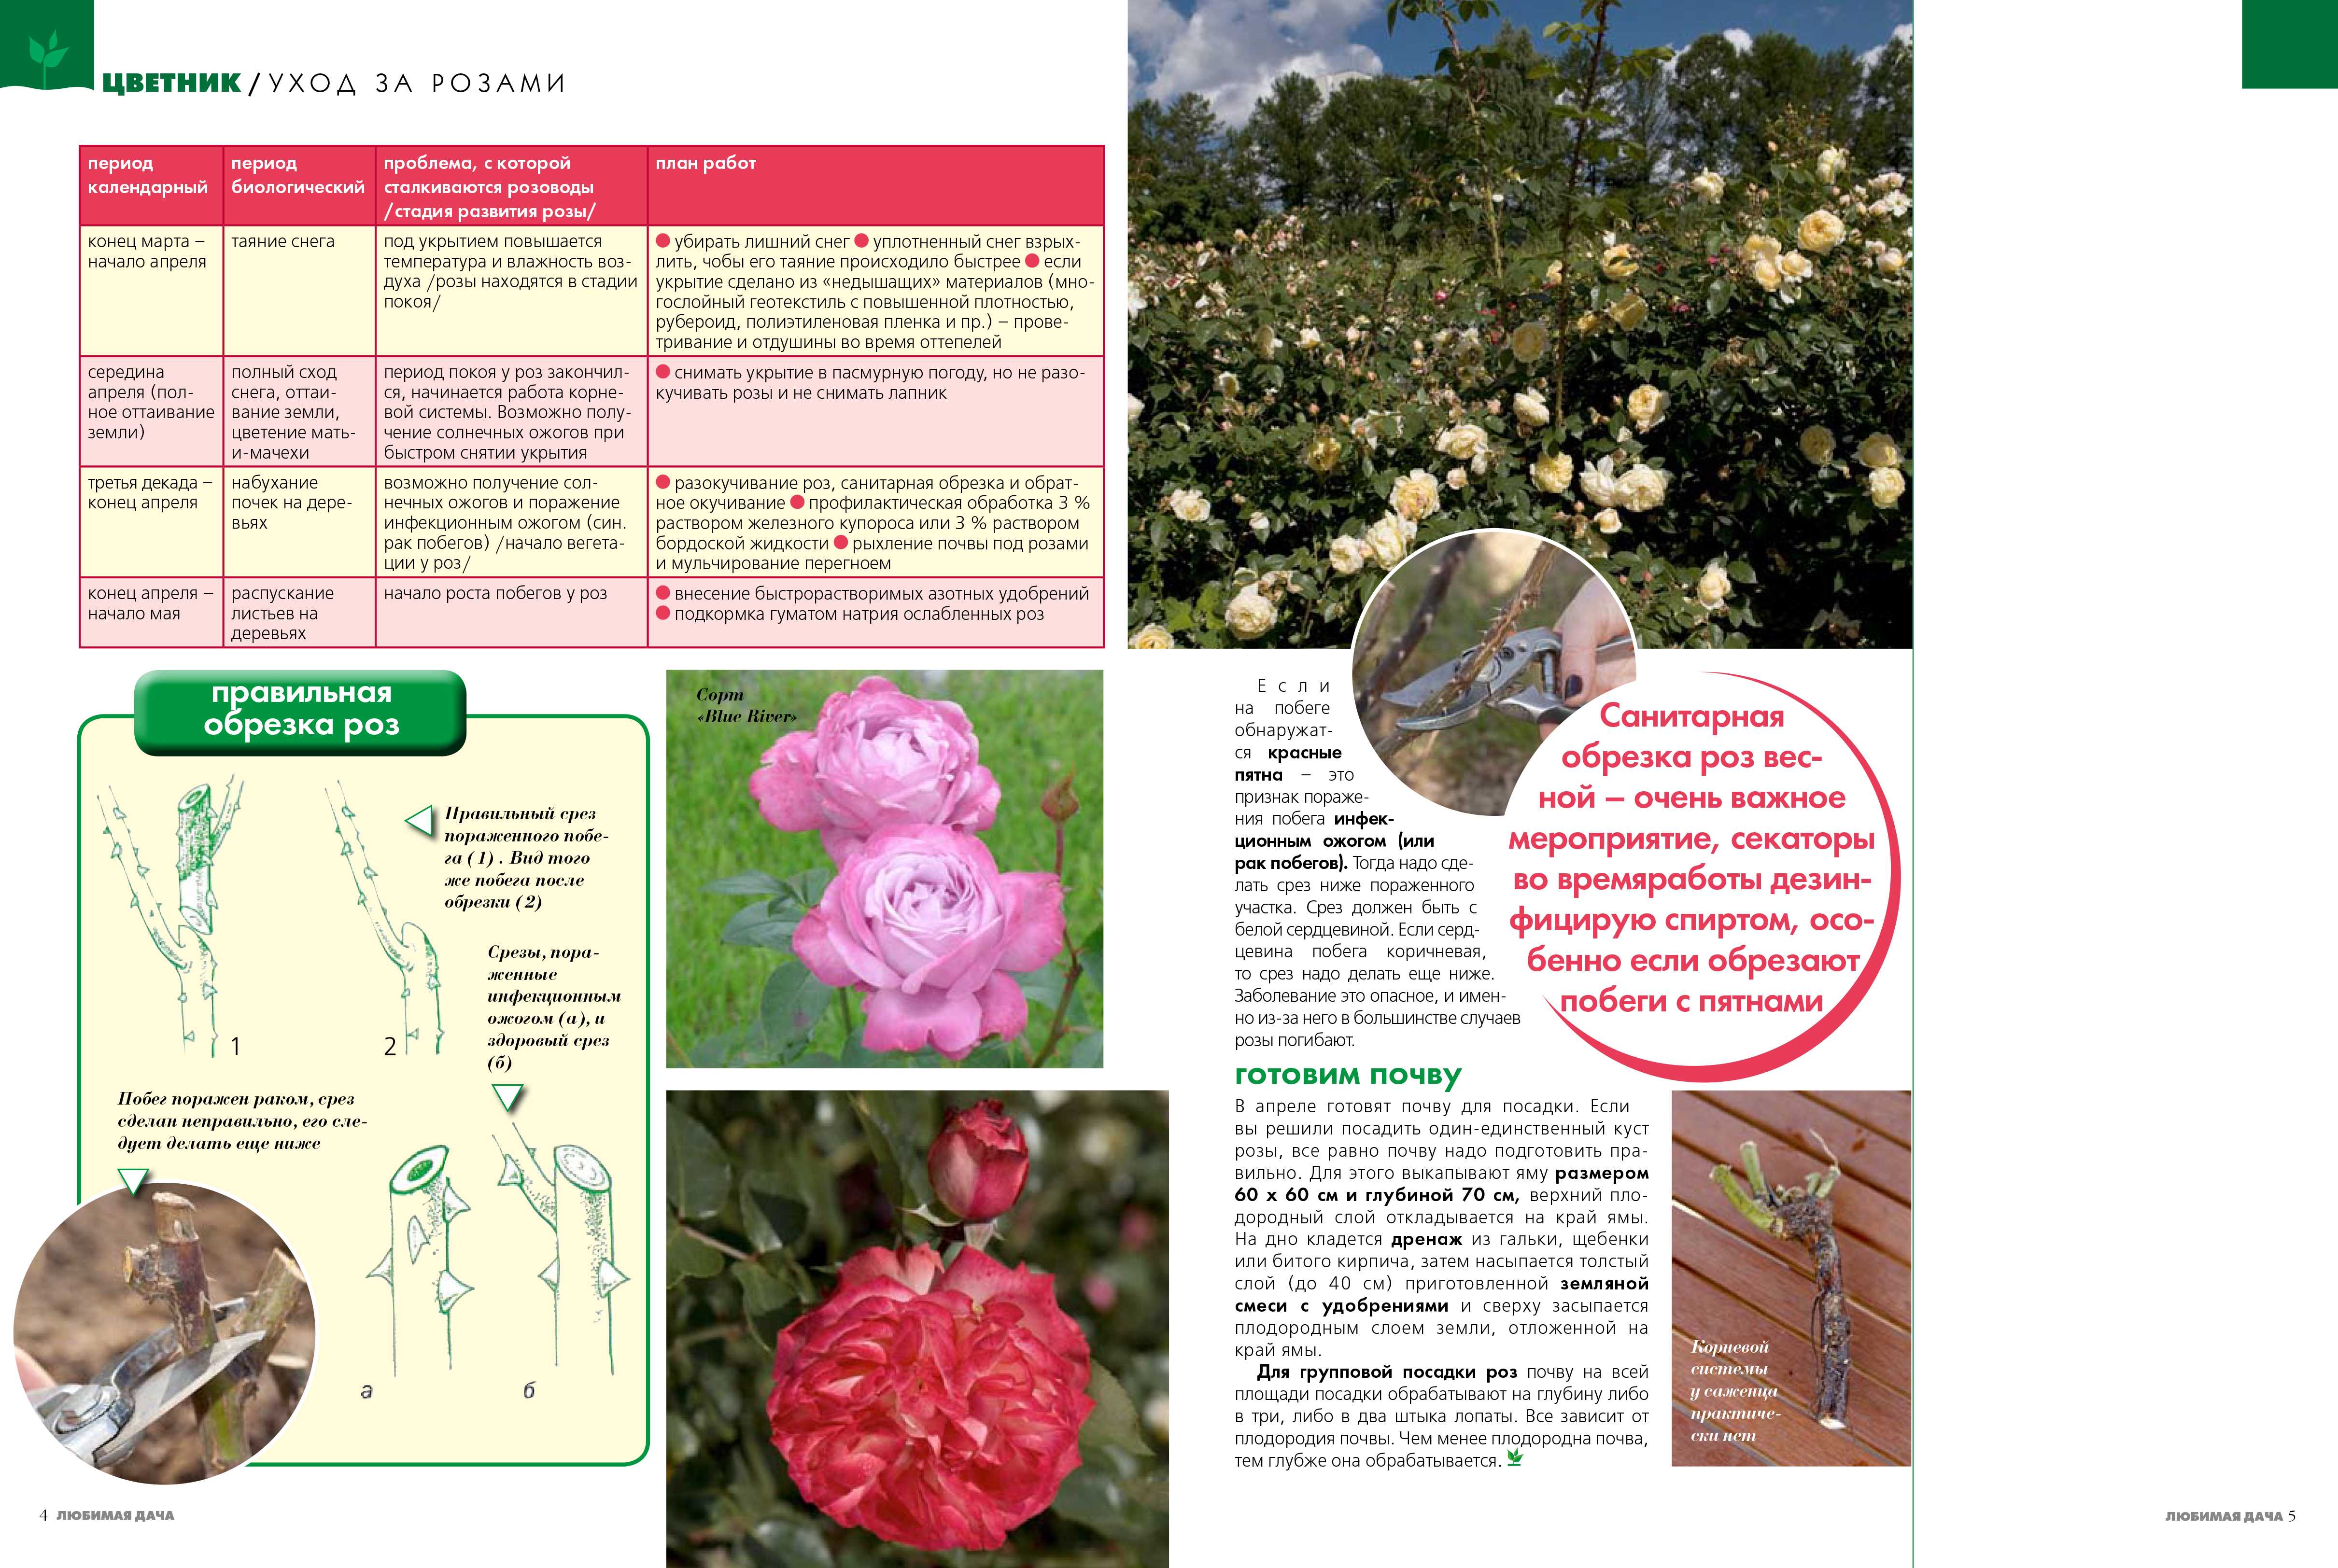 Сорта и виды плетистых роз ?: характеристики, названия, фото | qlumba.com